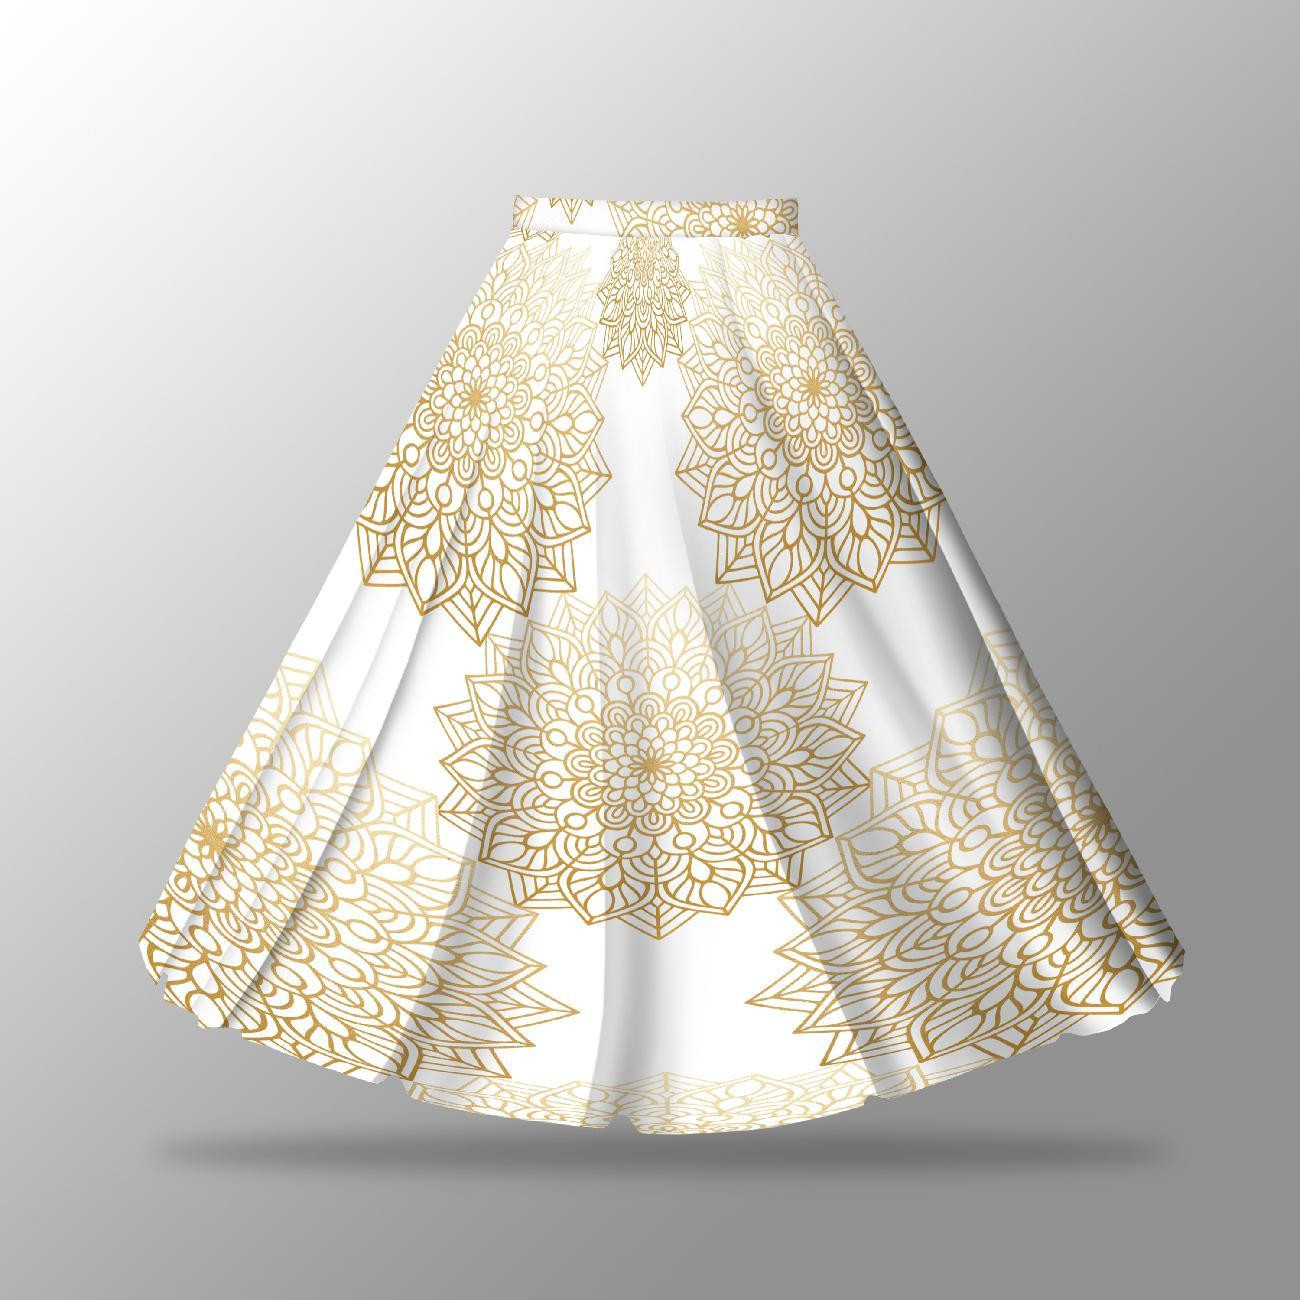 MANDALA pat. 5 - skirt panel "MAXI" - skirt panel "MAXI"